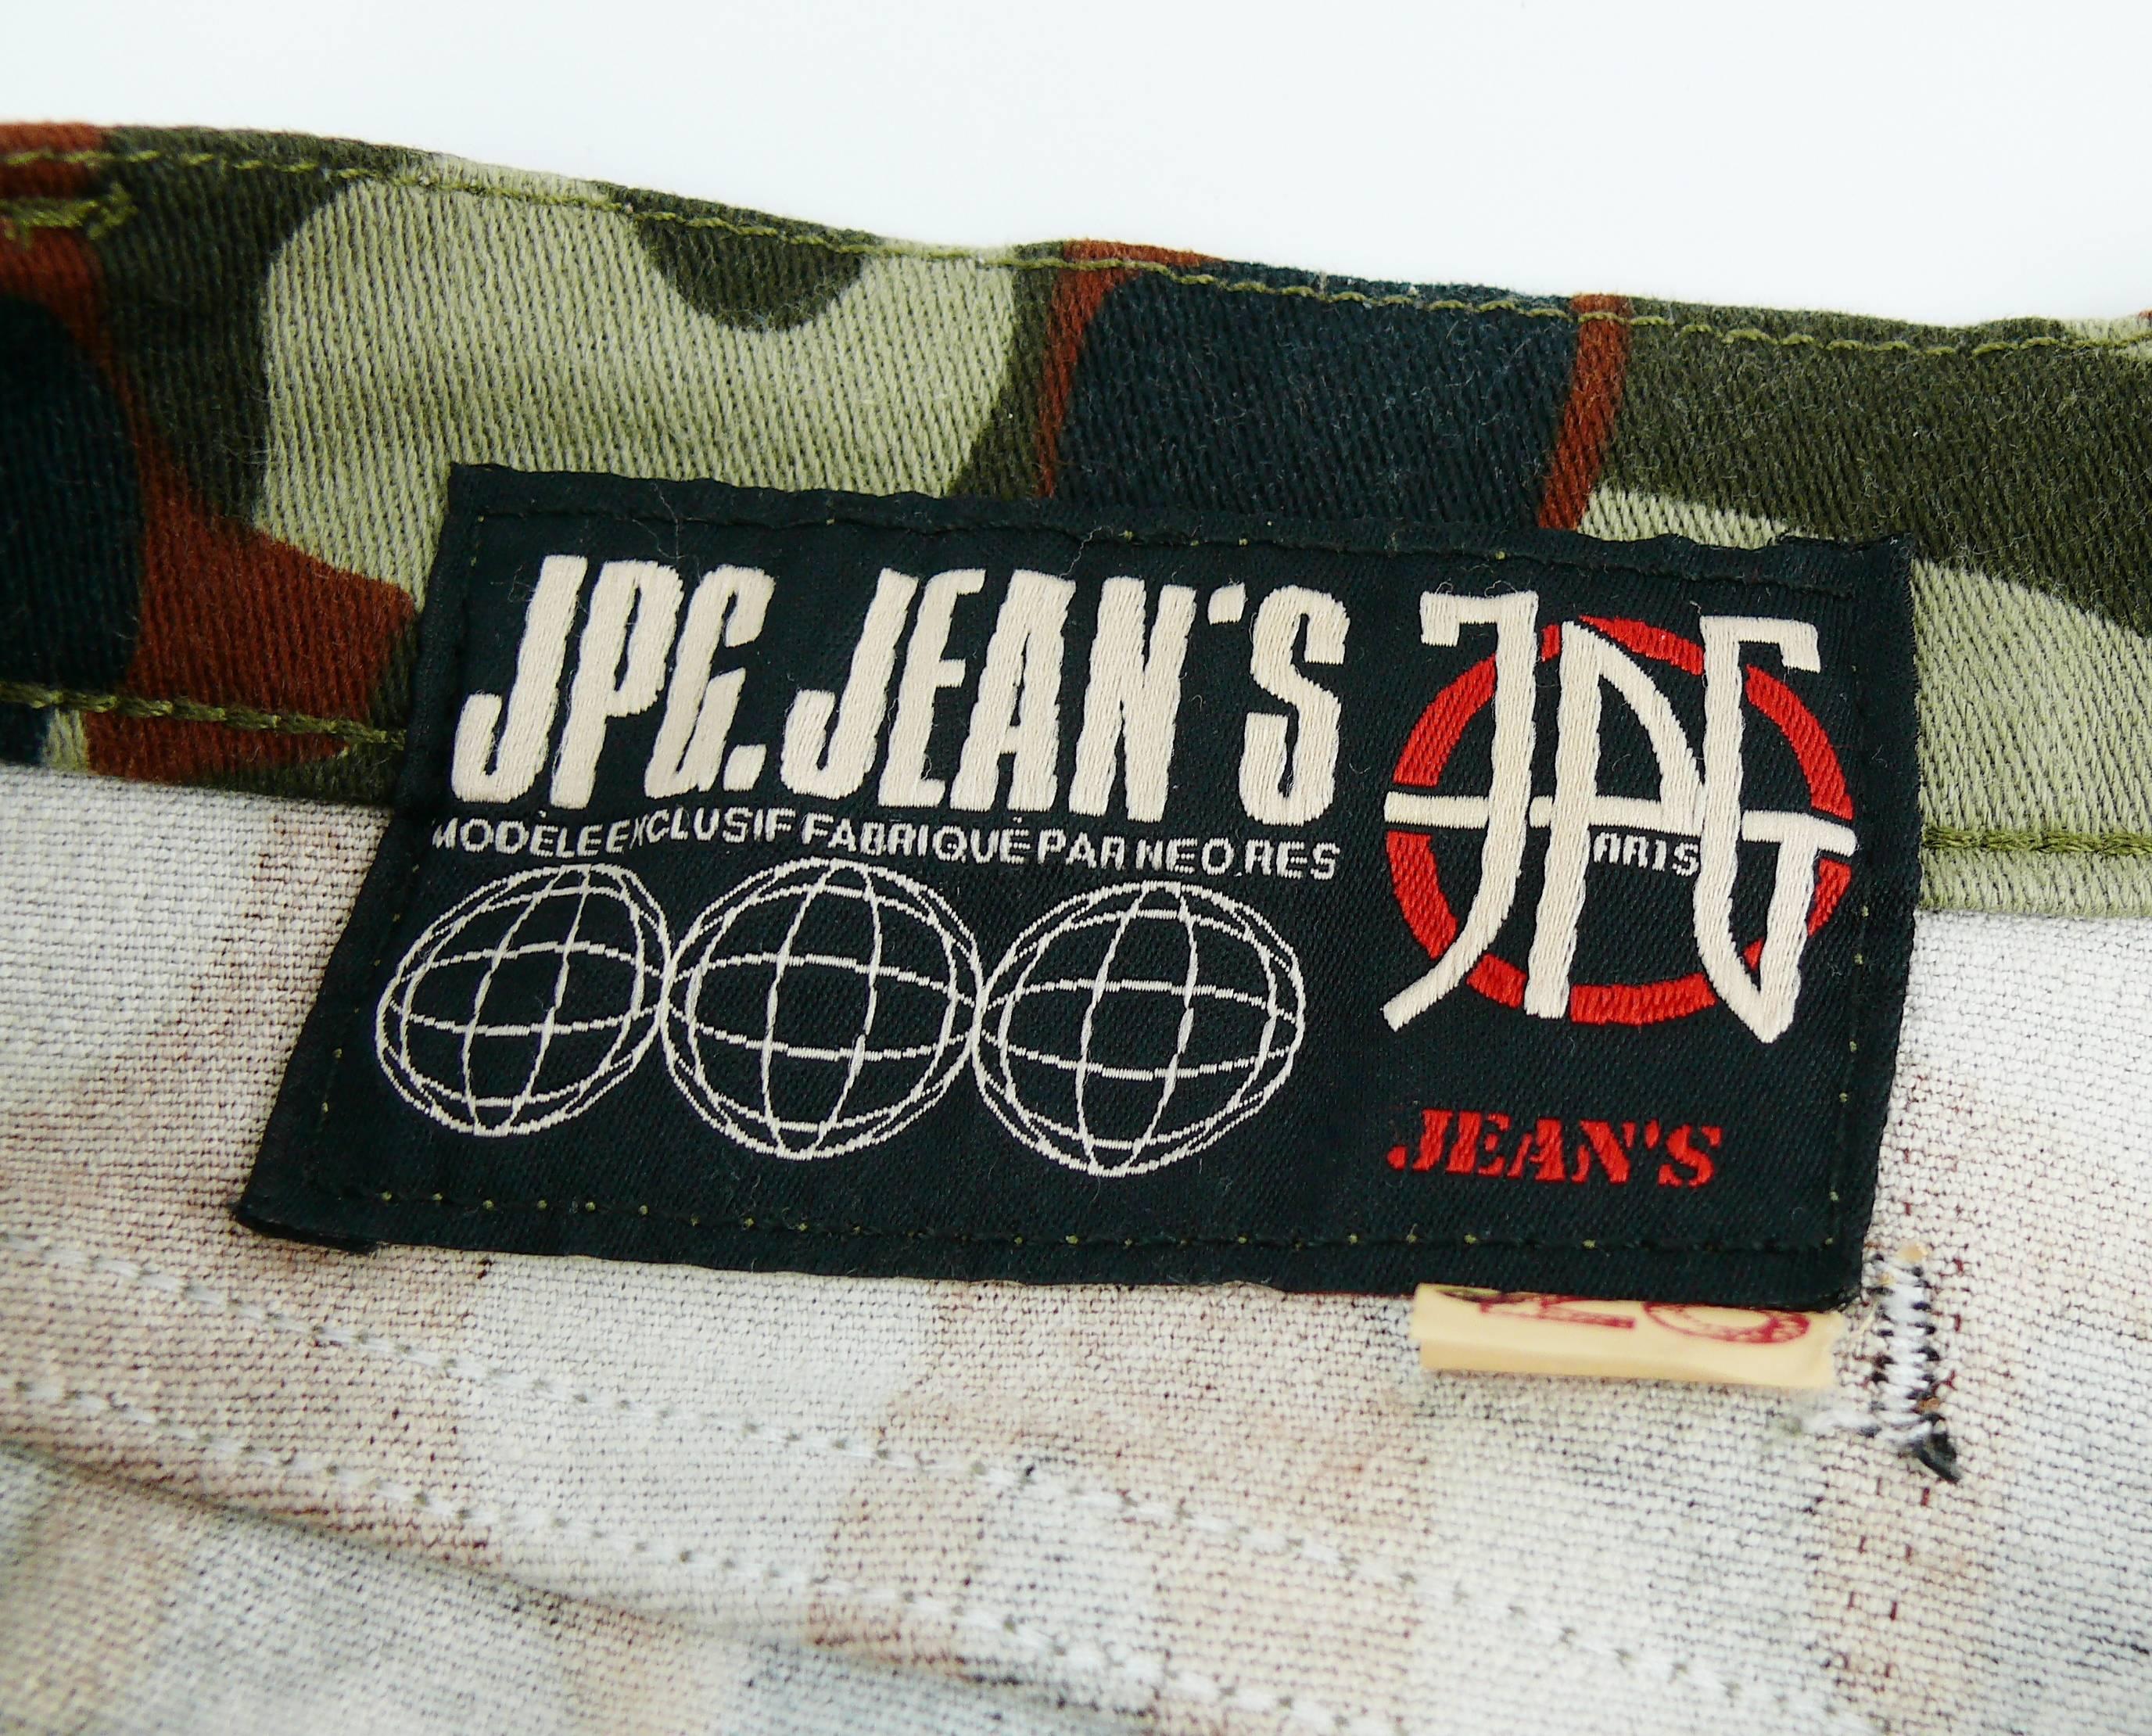 Jean Paul Gaultier Vintage Camouflage Faces Pants Trousers 2